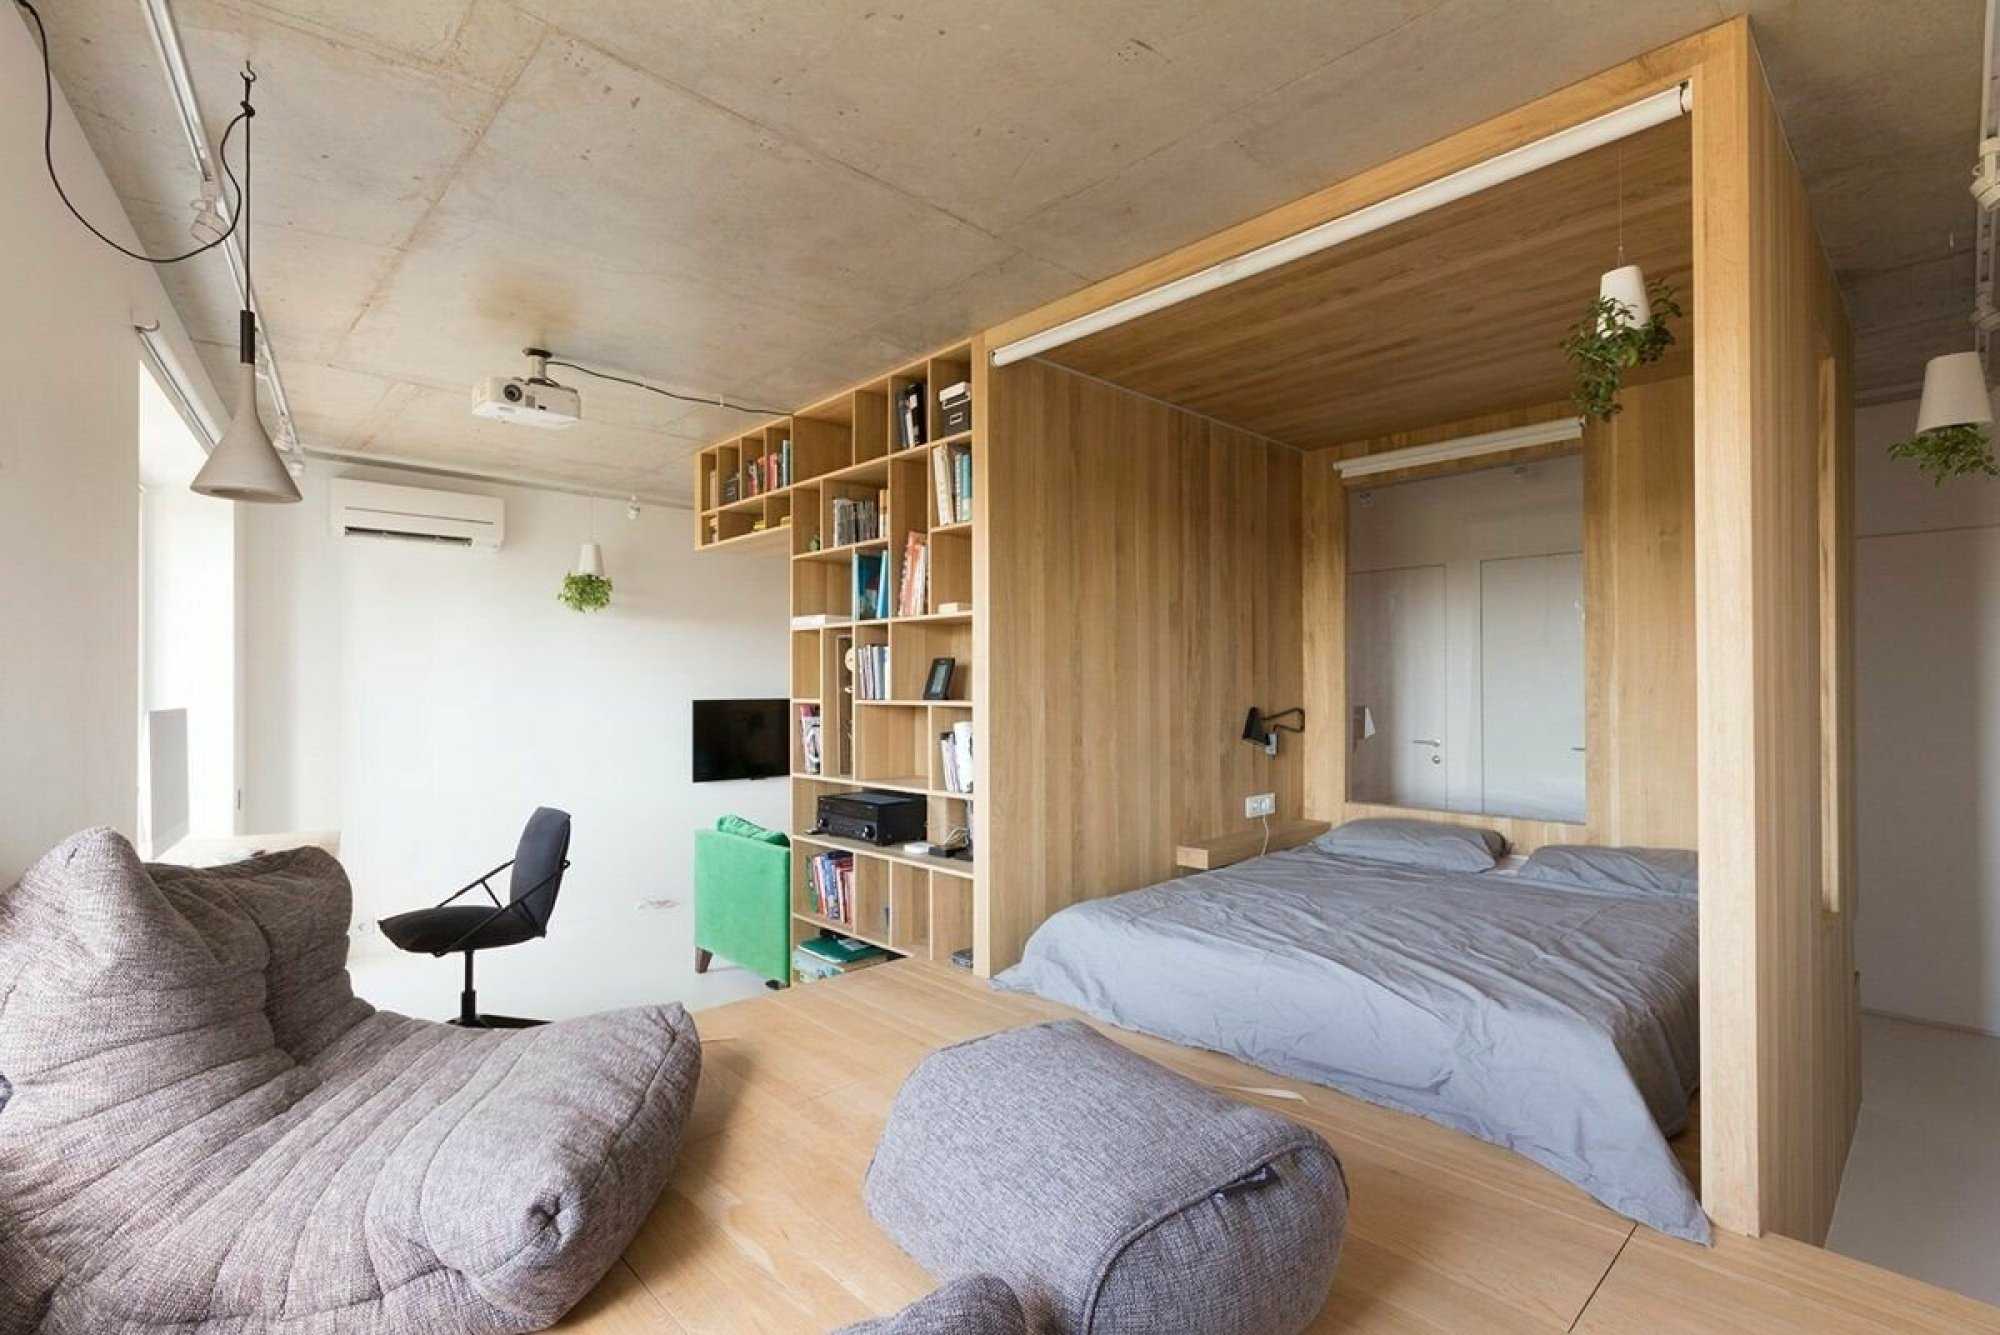 Кровать в однушке. Кровать за перегородкой. Спальное место в маленькой квартире. Спальня с высокими потолками. Кровать на подиуме в интерьере.